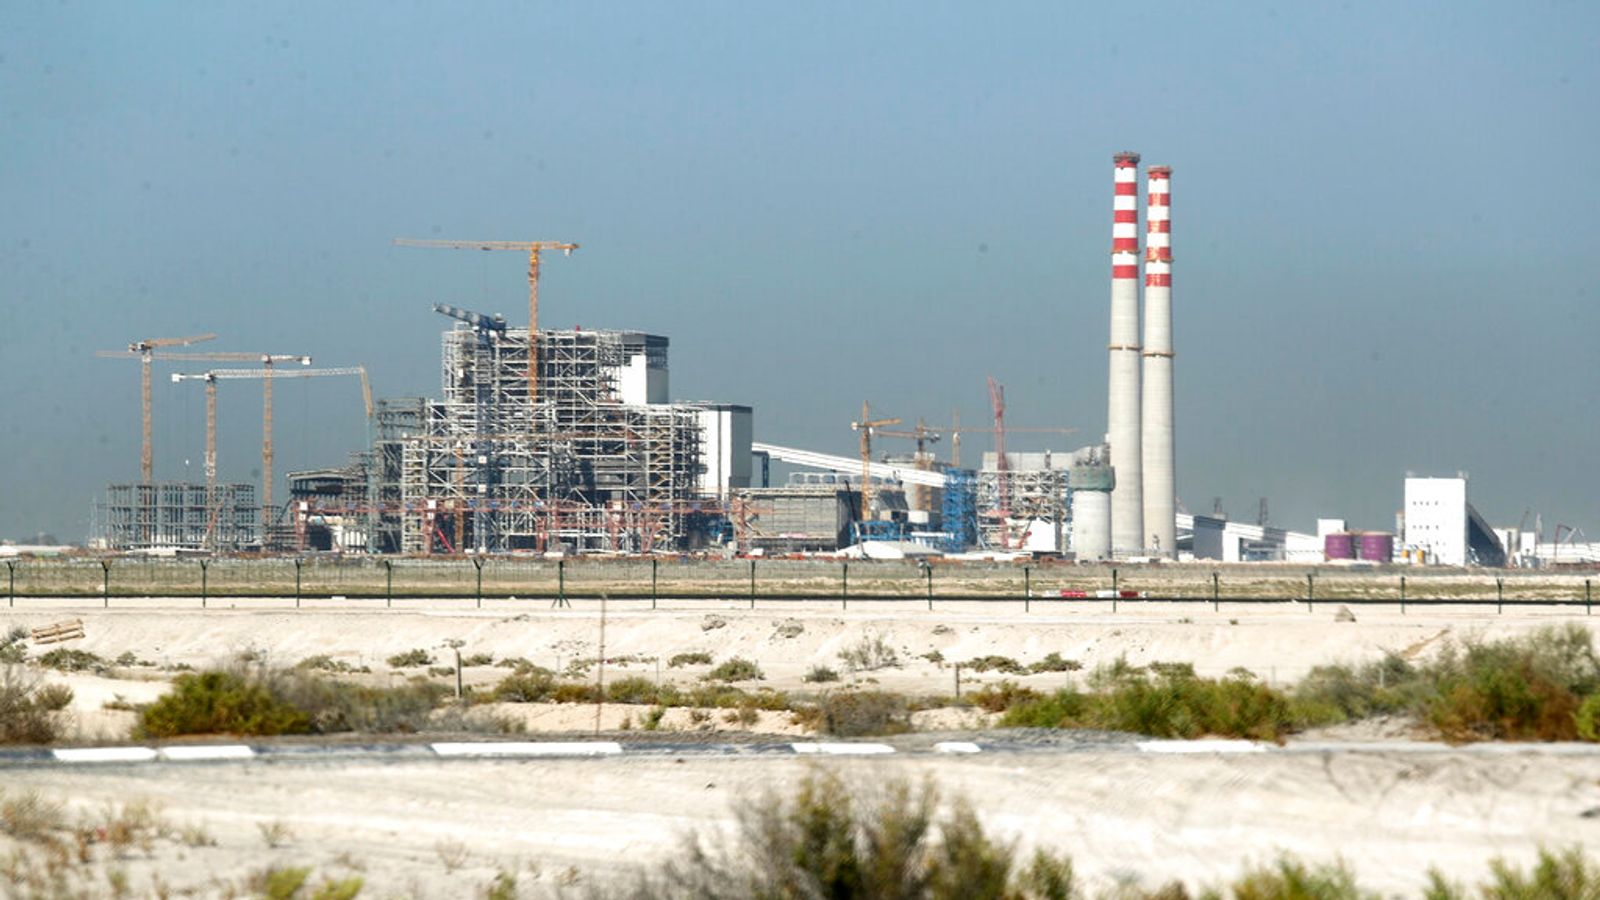 Les Émirats arabes unis, hôtes de la COP28, qualifient leur plan climatique de « largement inadéquat » alors qu’ils accueillent le sommet |  Actualité climatique